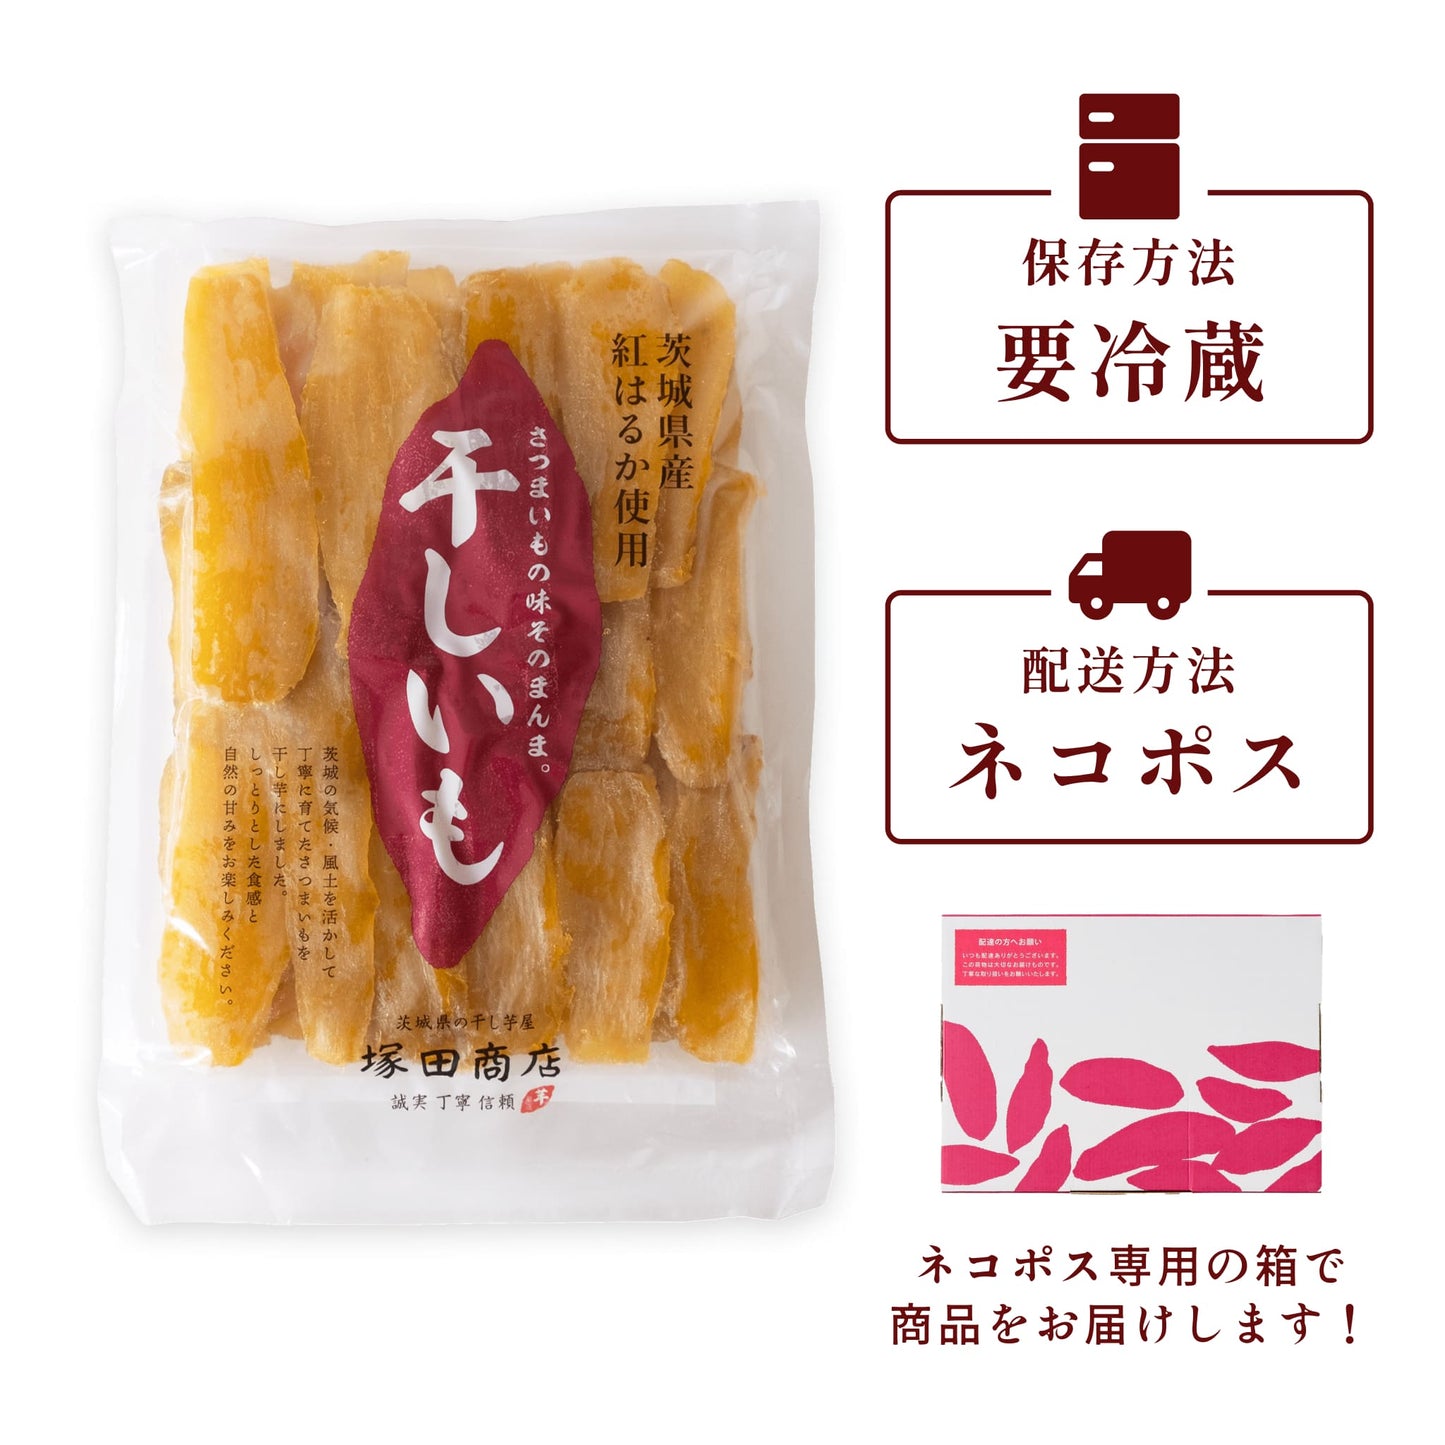 DAN様専用ページです。茨城県産紅はるか平干しB6キロ - その他 加工食品